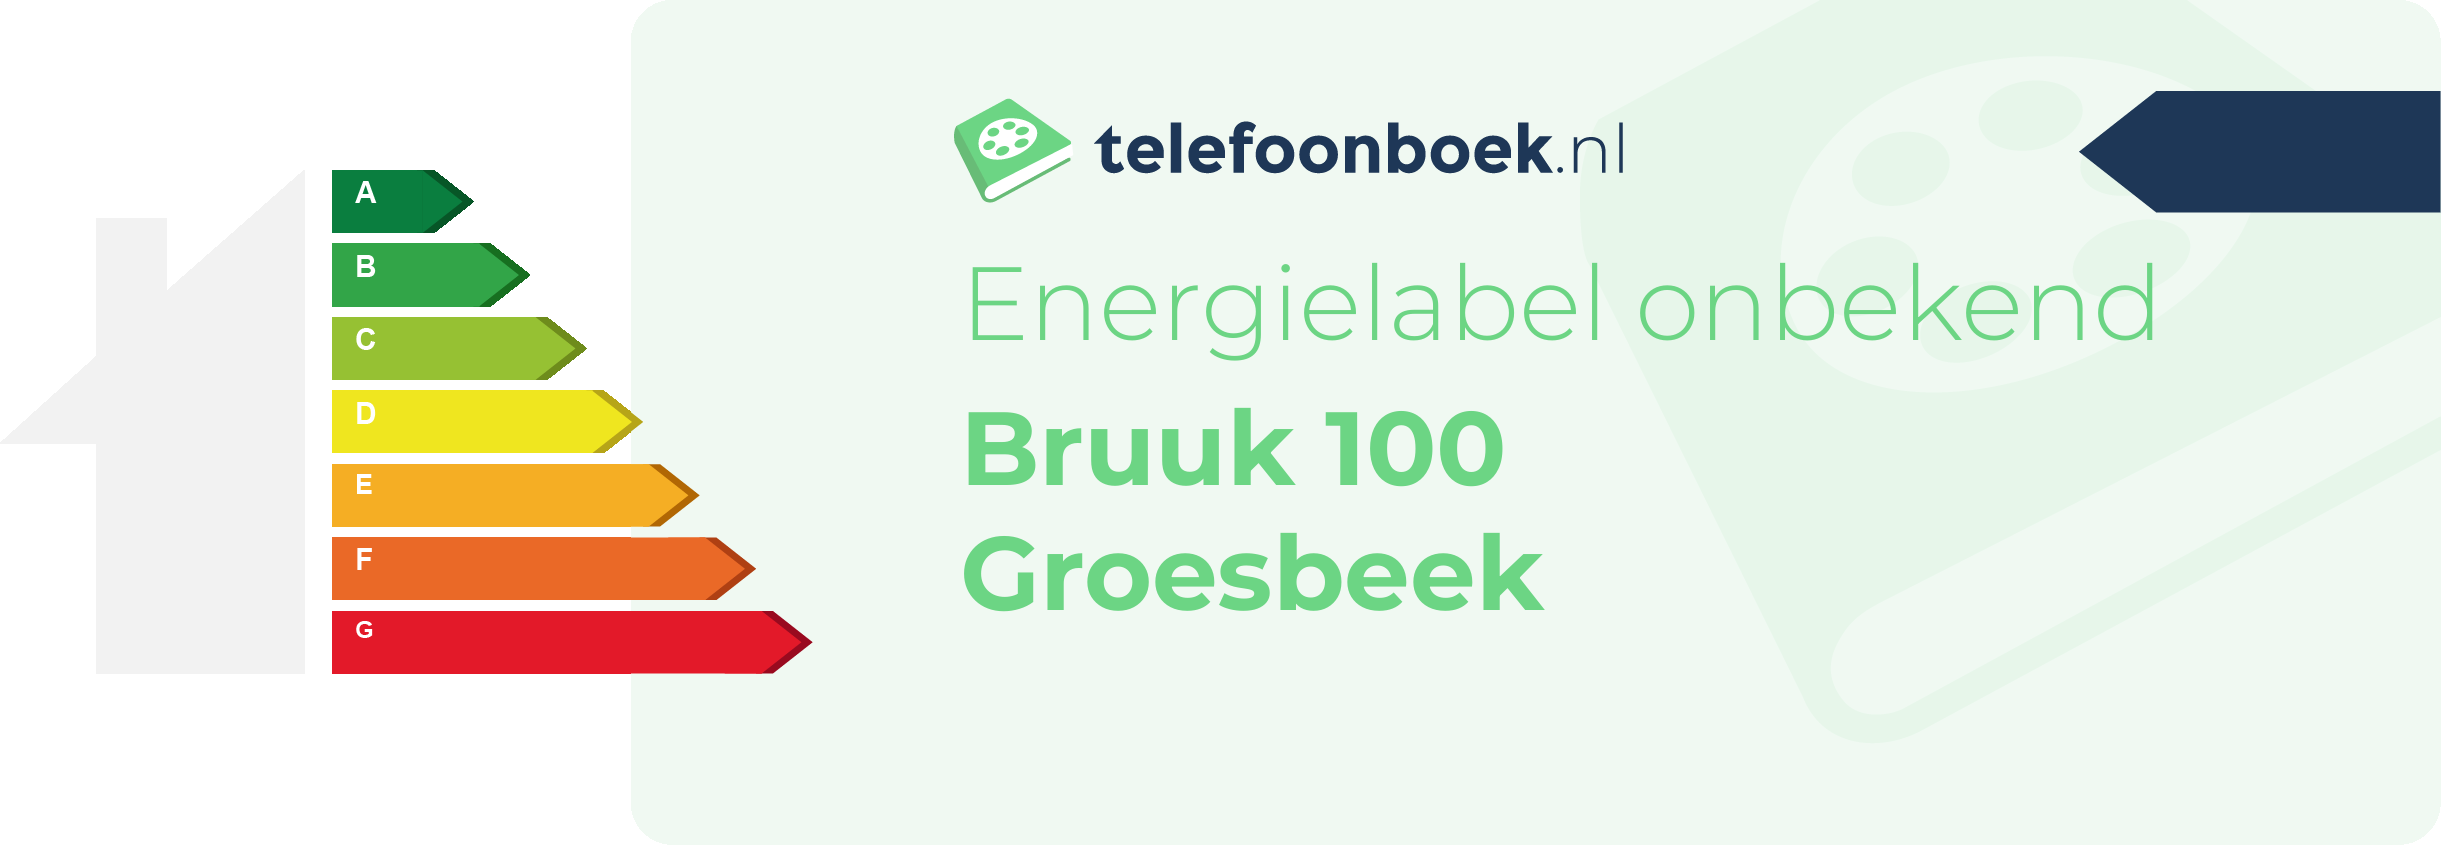 Energielabel Bruuk 100 Groesbeek